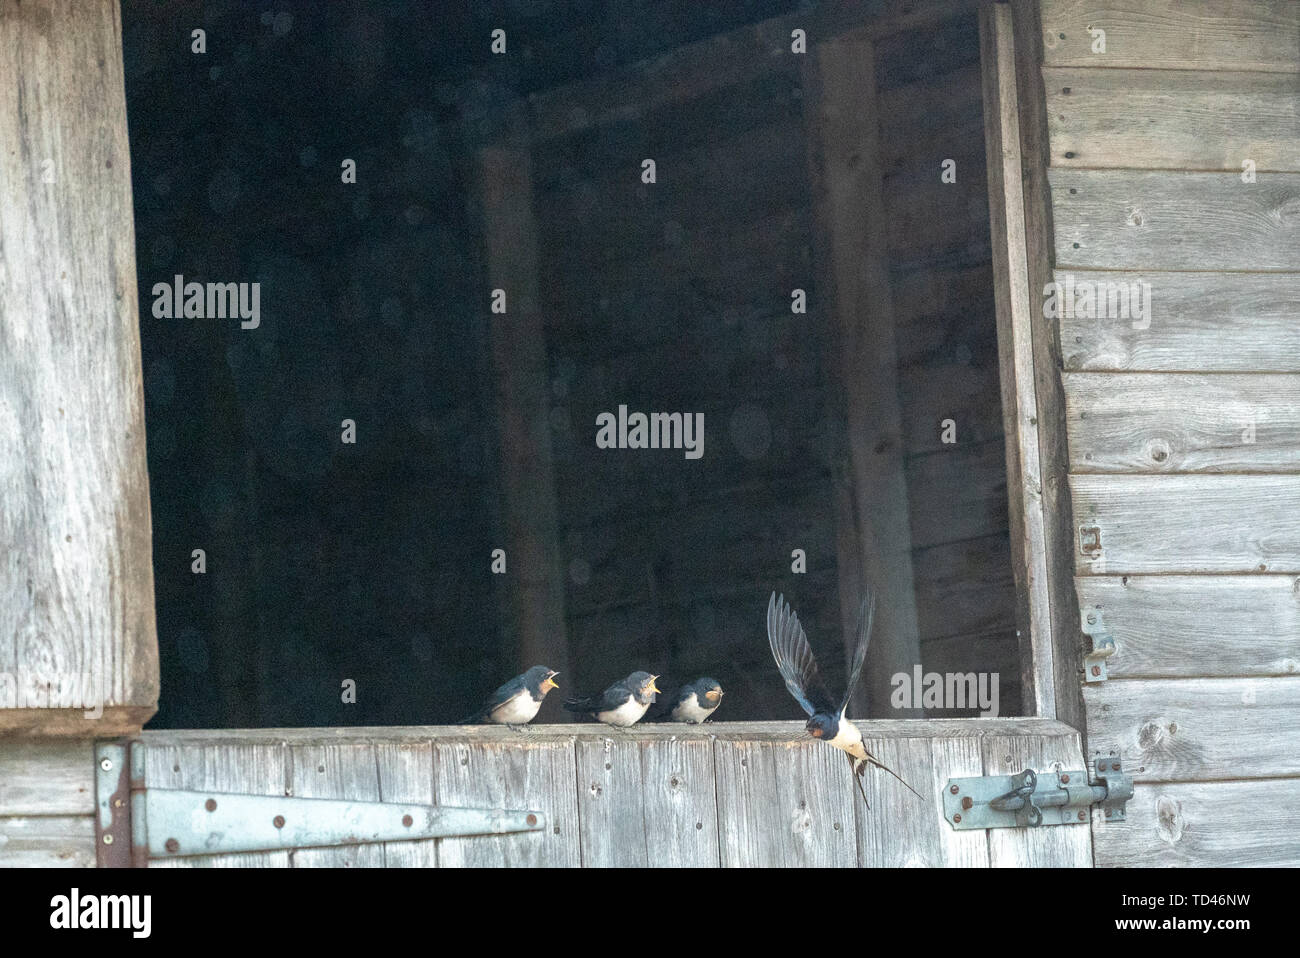 Barn swallow feeding fledgling at Brokenborough, Malmesbury UK Stock Photo